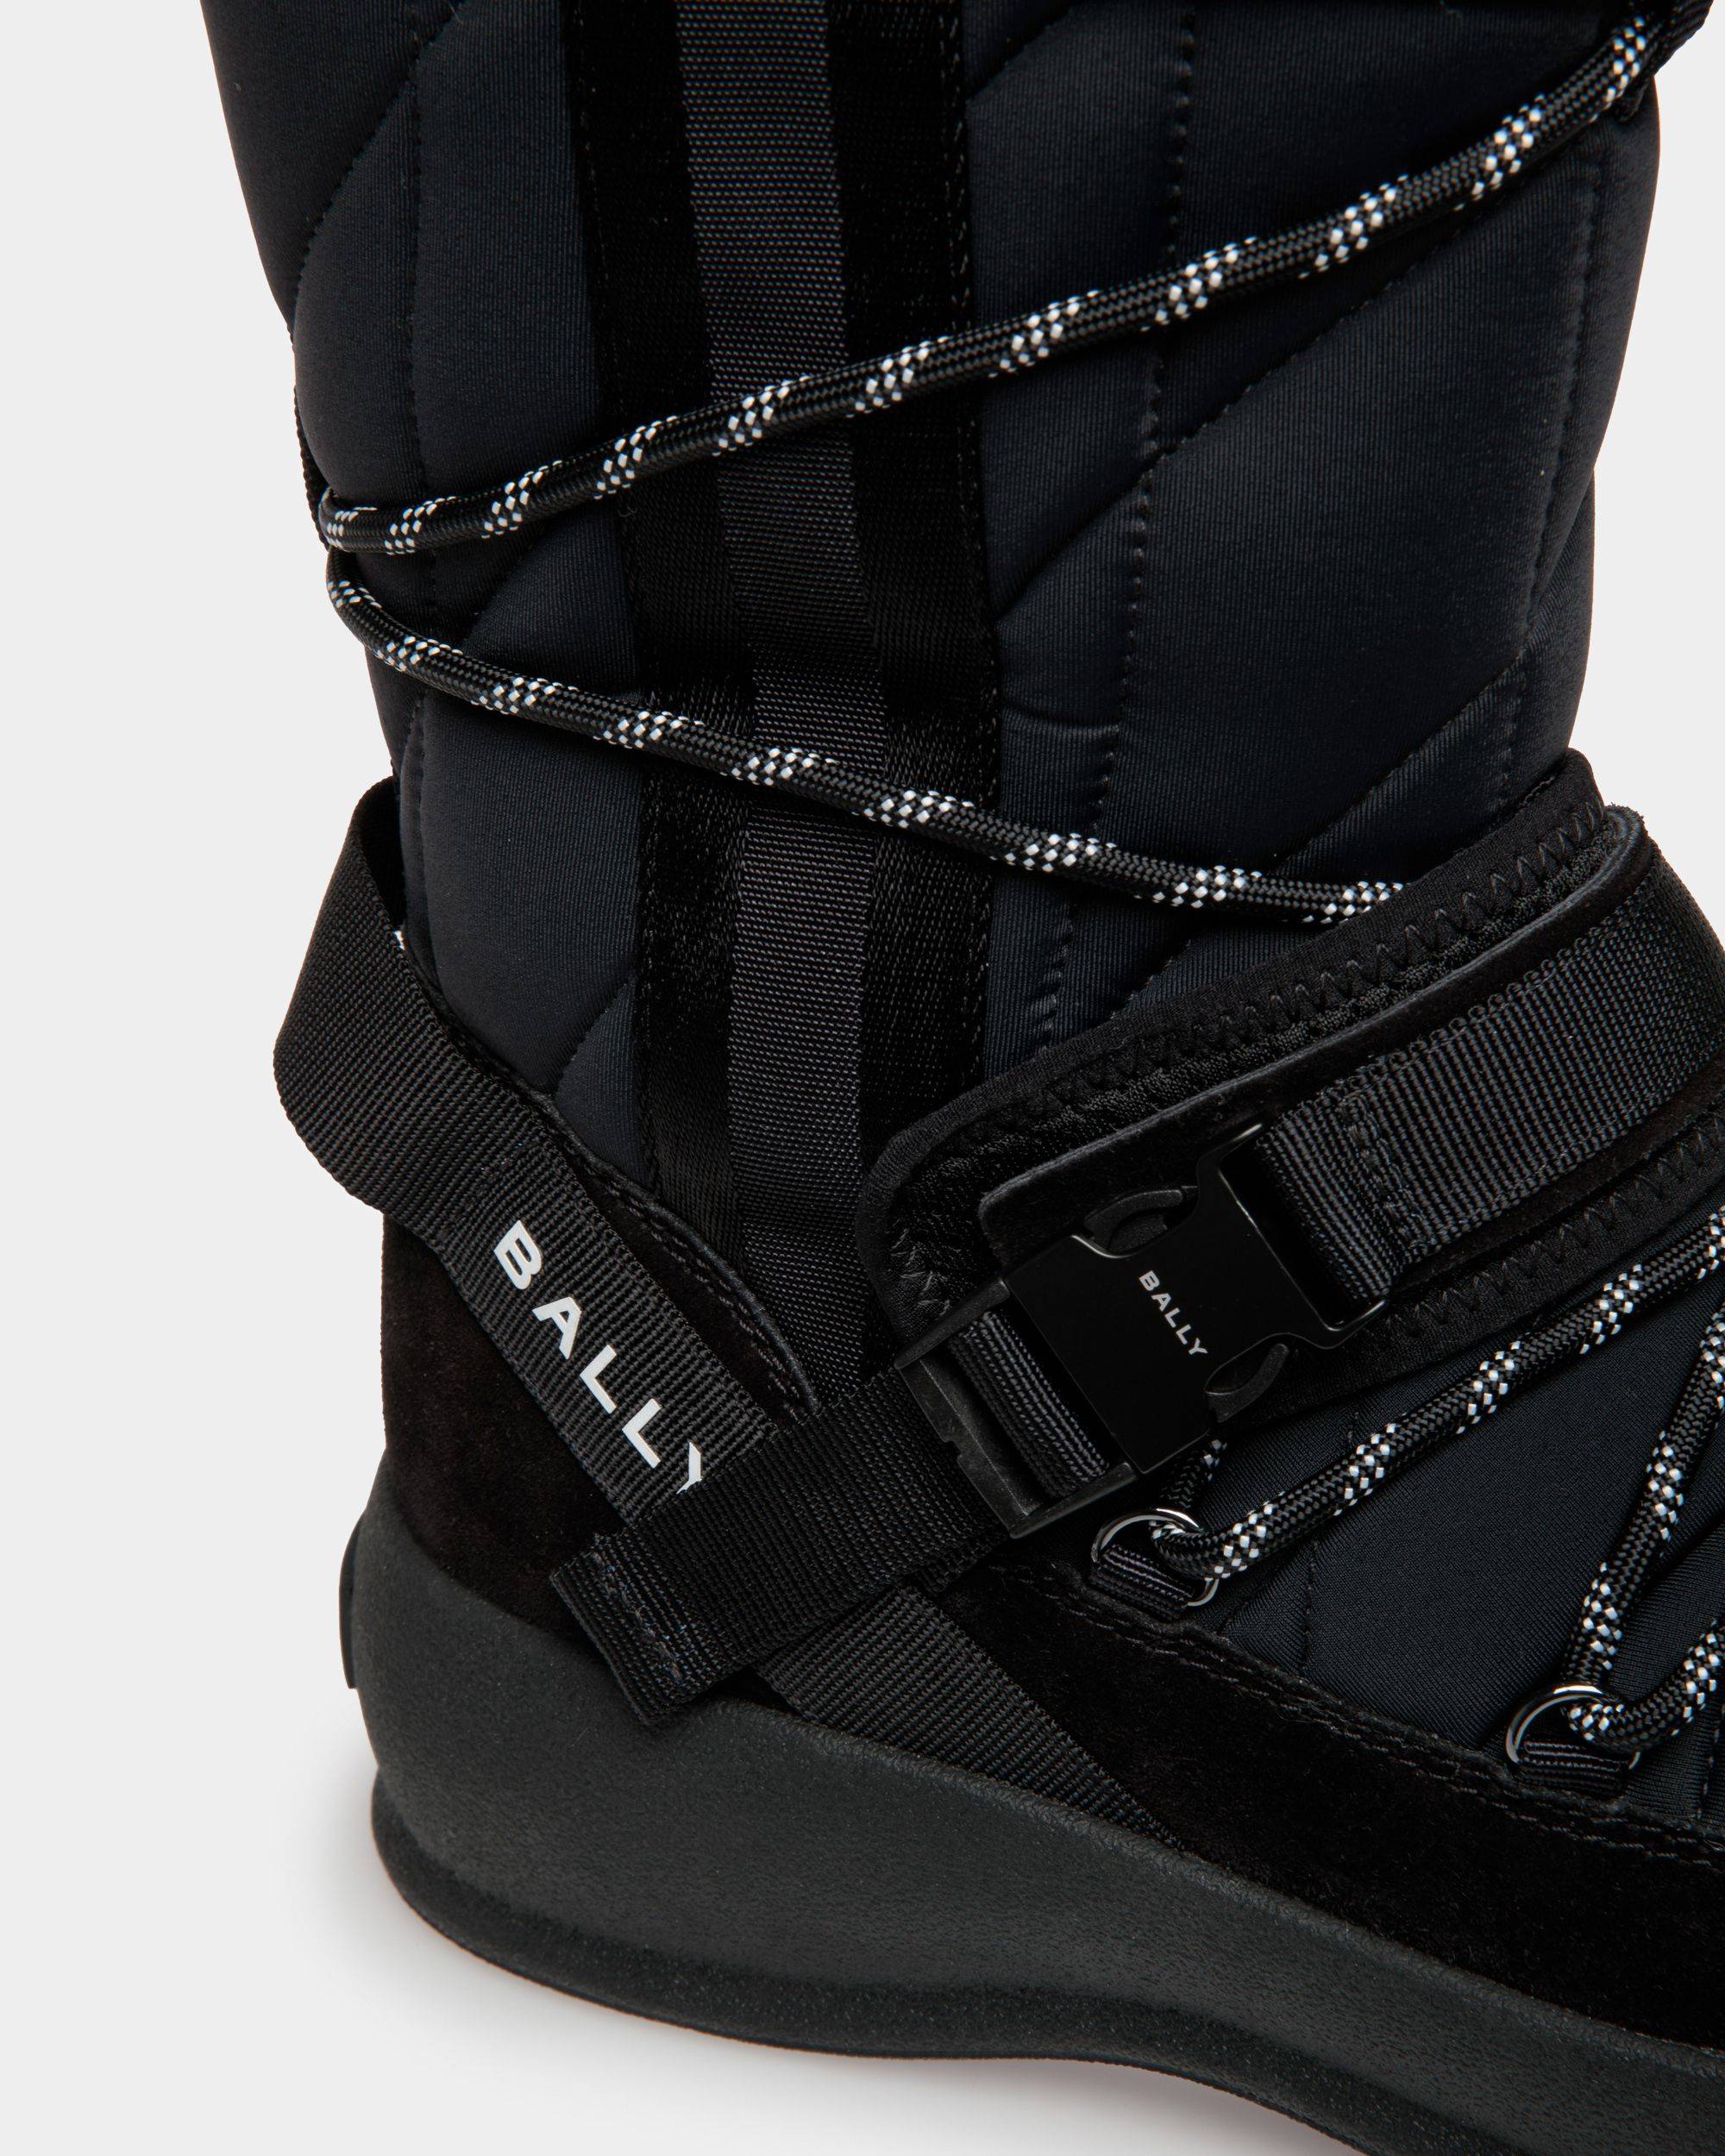 Frei | Women's Boot in Black Nylon | Bally | Still Life Detail